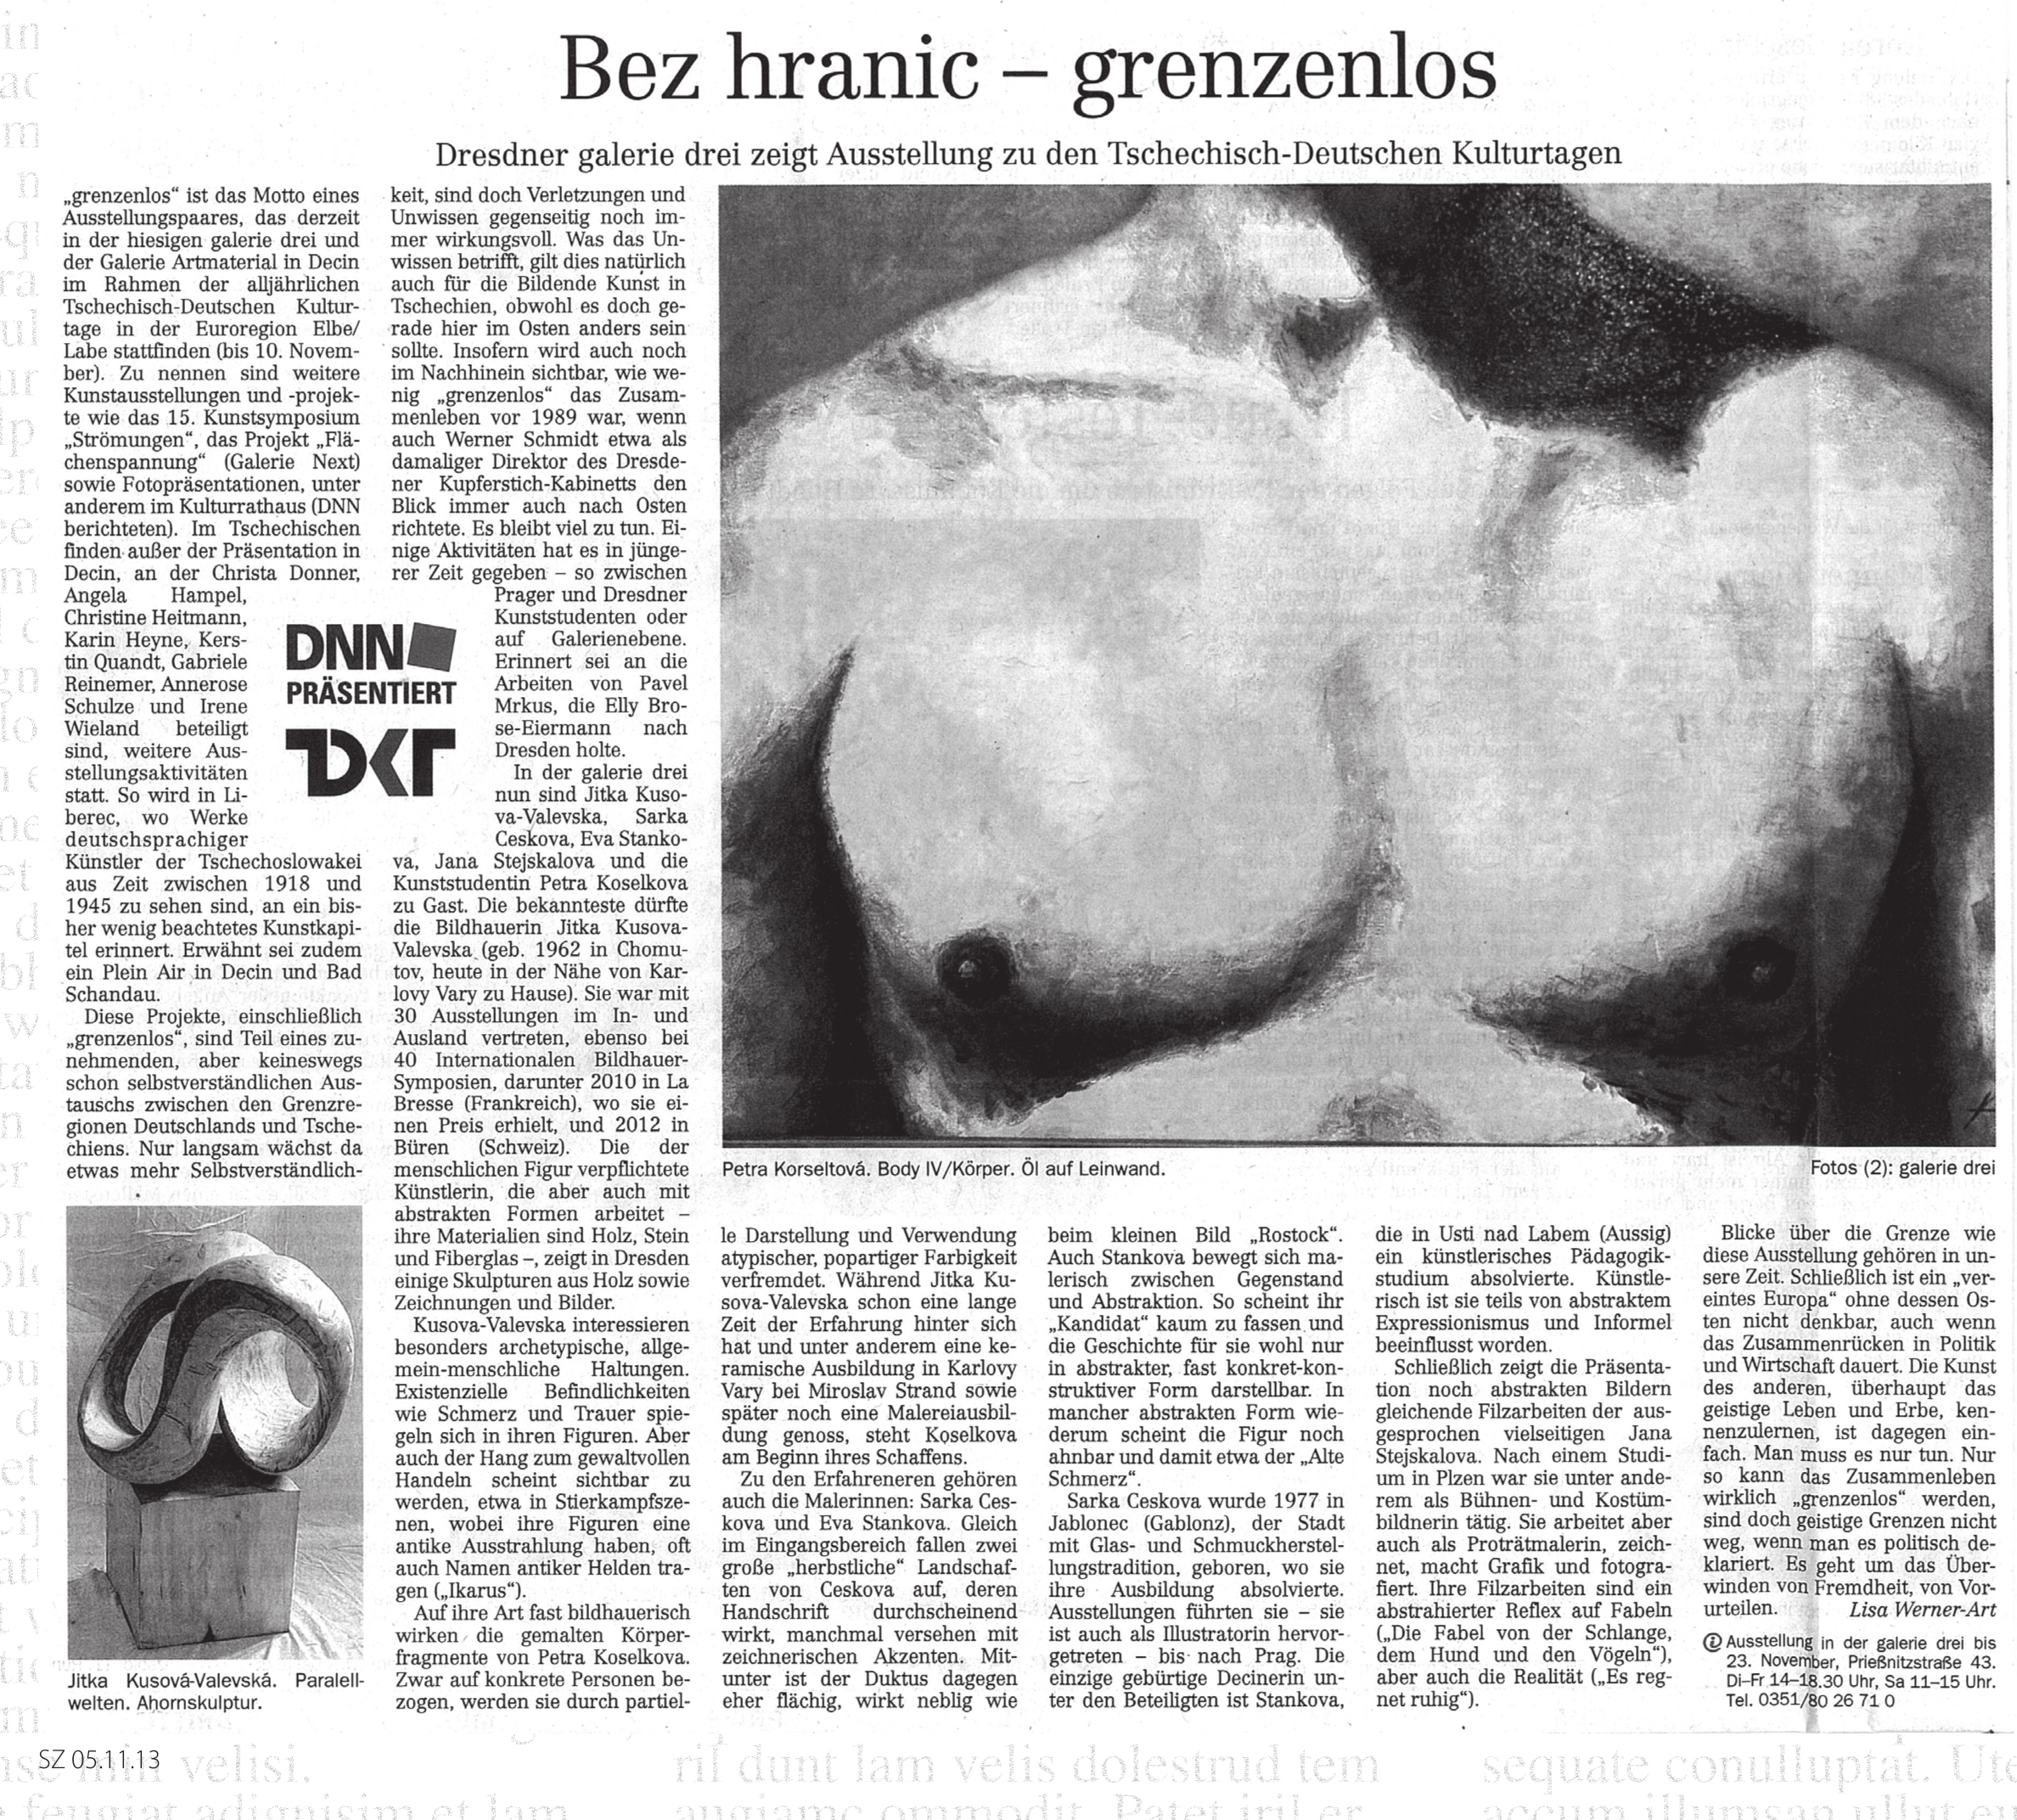 Dresdner Neueste Nachrichten, 05.11.2013, Lisa Werner Art